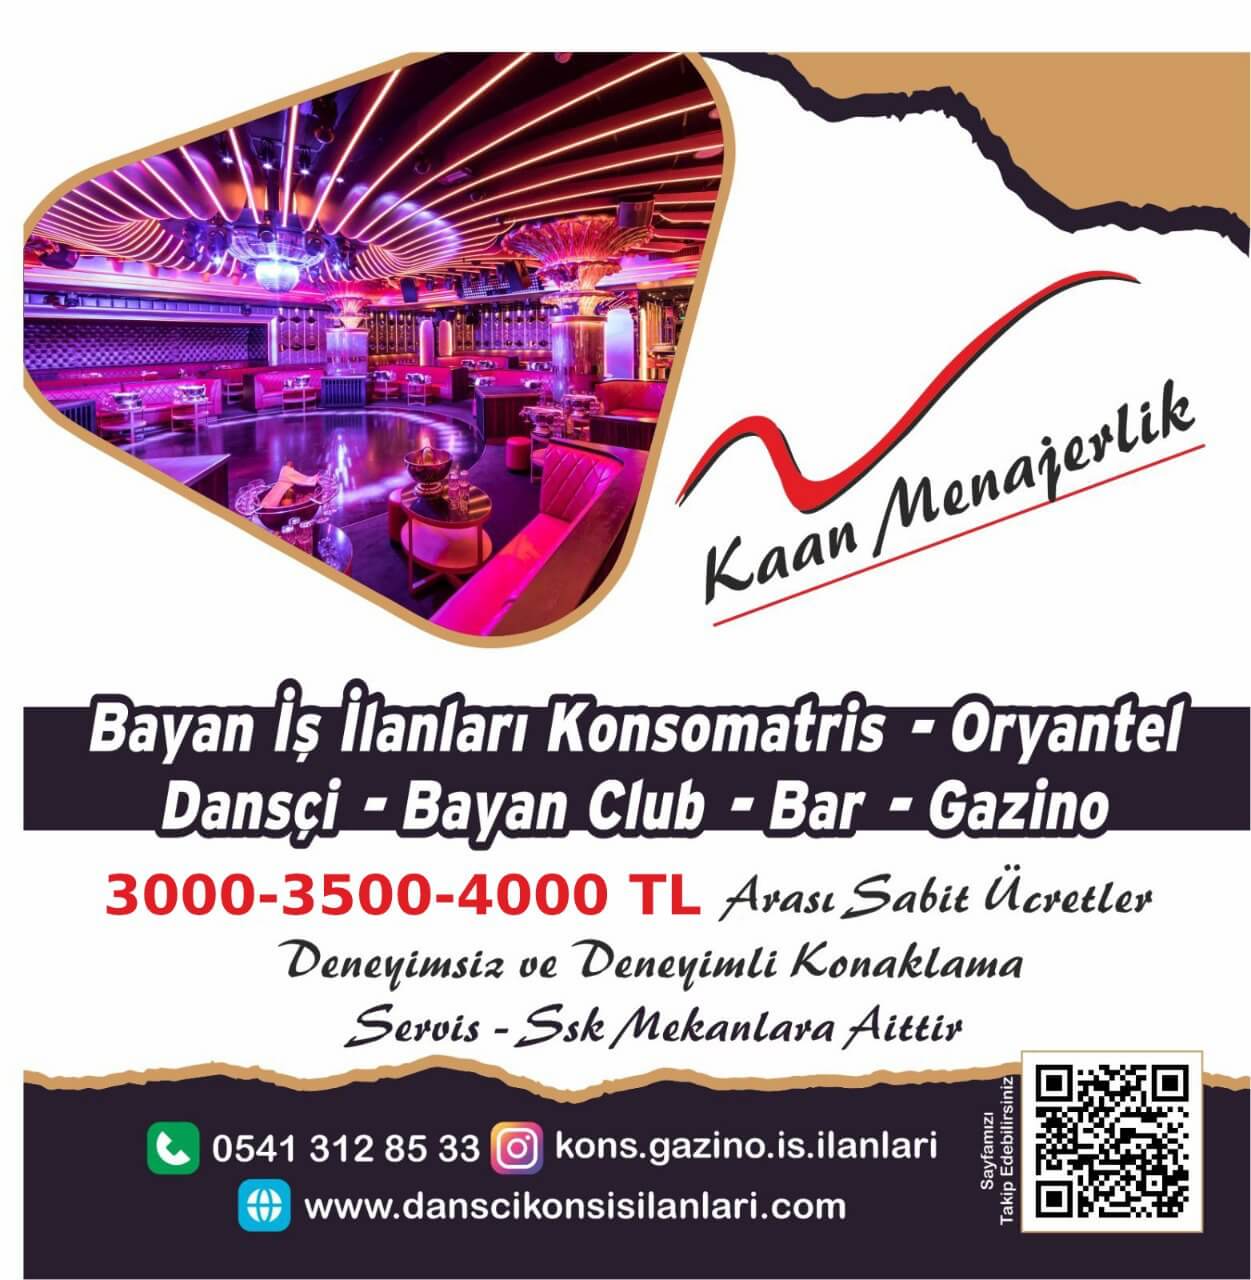 Antalya konsomatris iş ilanları